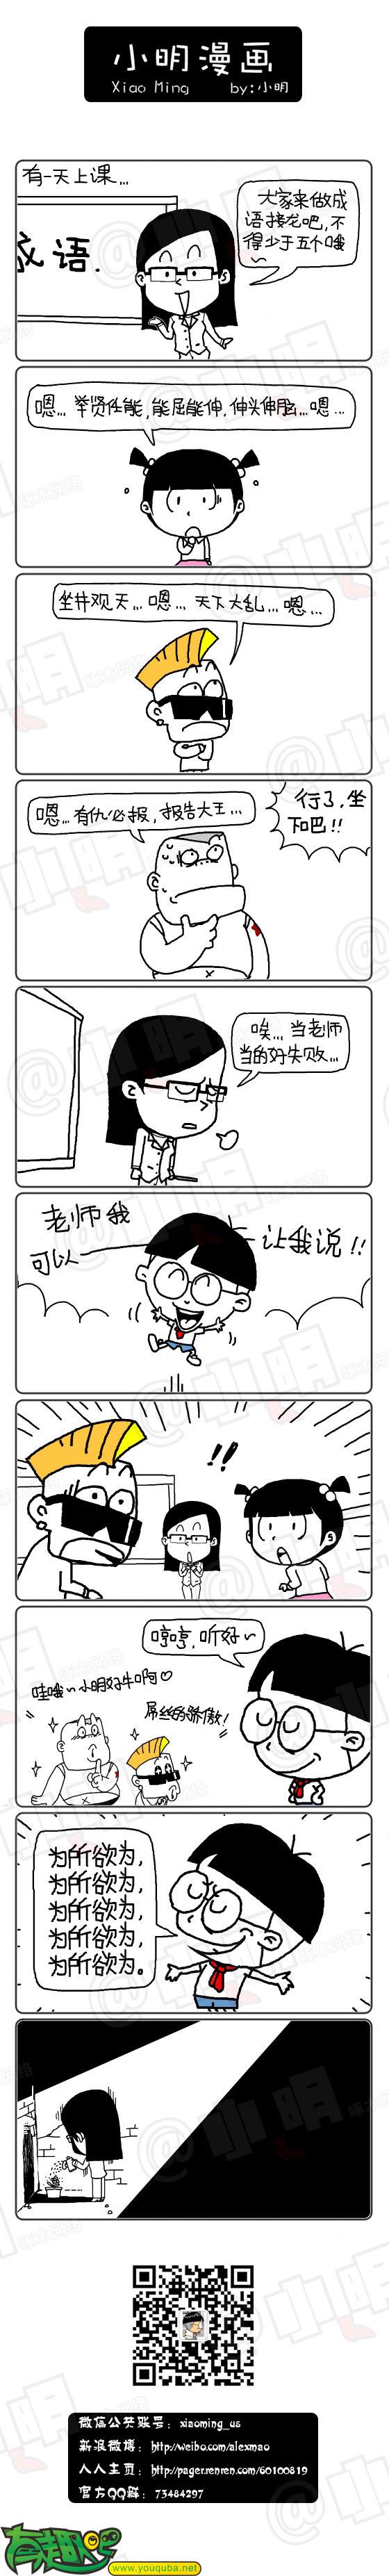 小明系列漫画:成语接龙